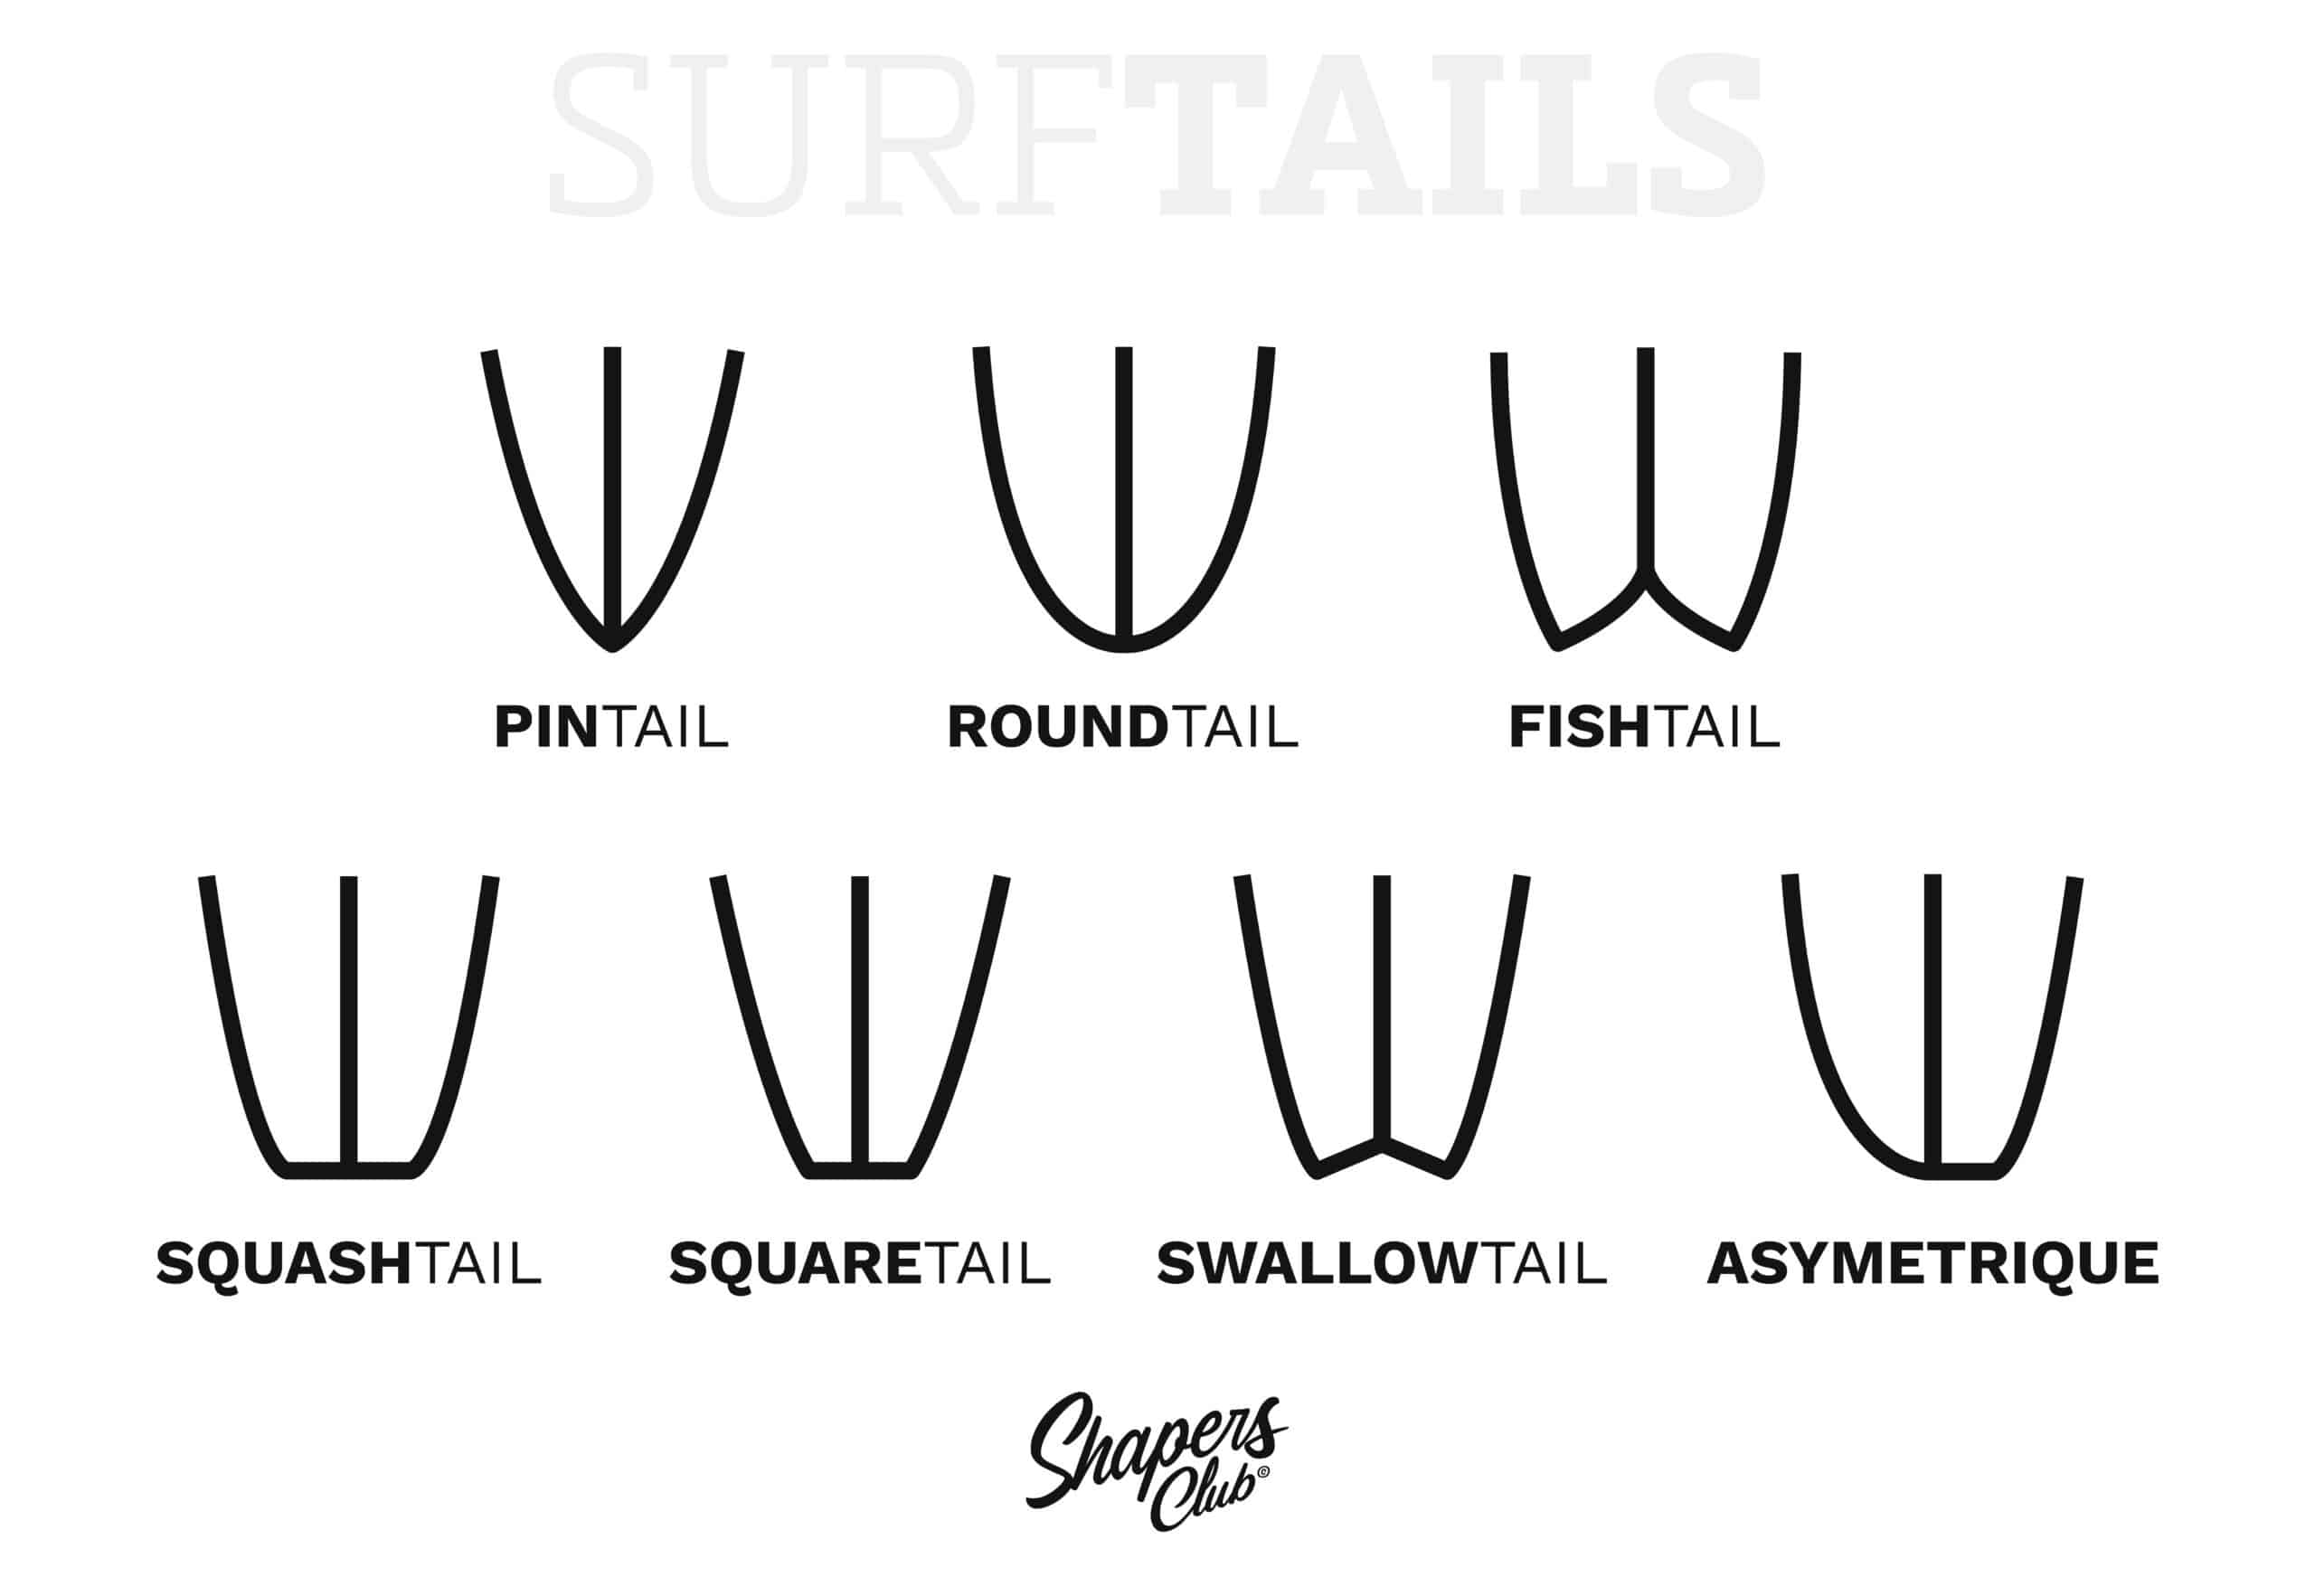 Shapers-Club- Guide Complet de Tails de Planche de Surf, incluant pintail, roundtail, fishtail, squashtail, squaretail, swrowtail et designs asymétriques -surfshop-surfboard